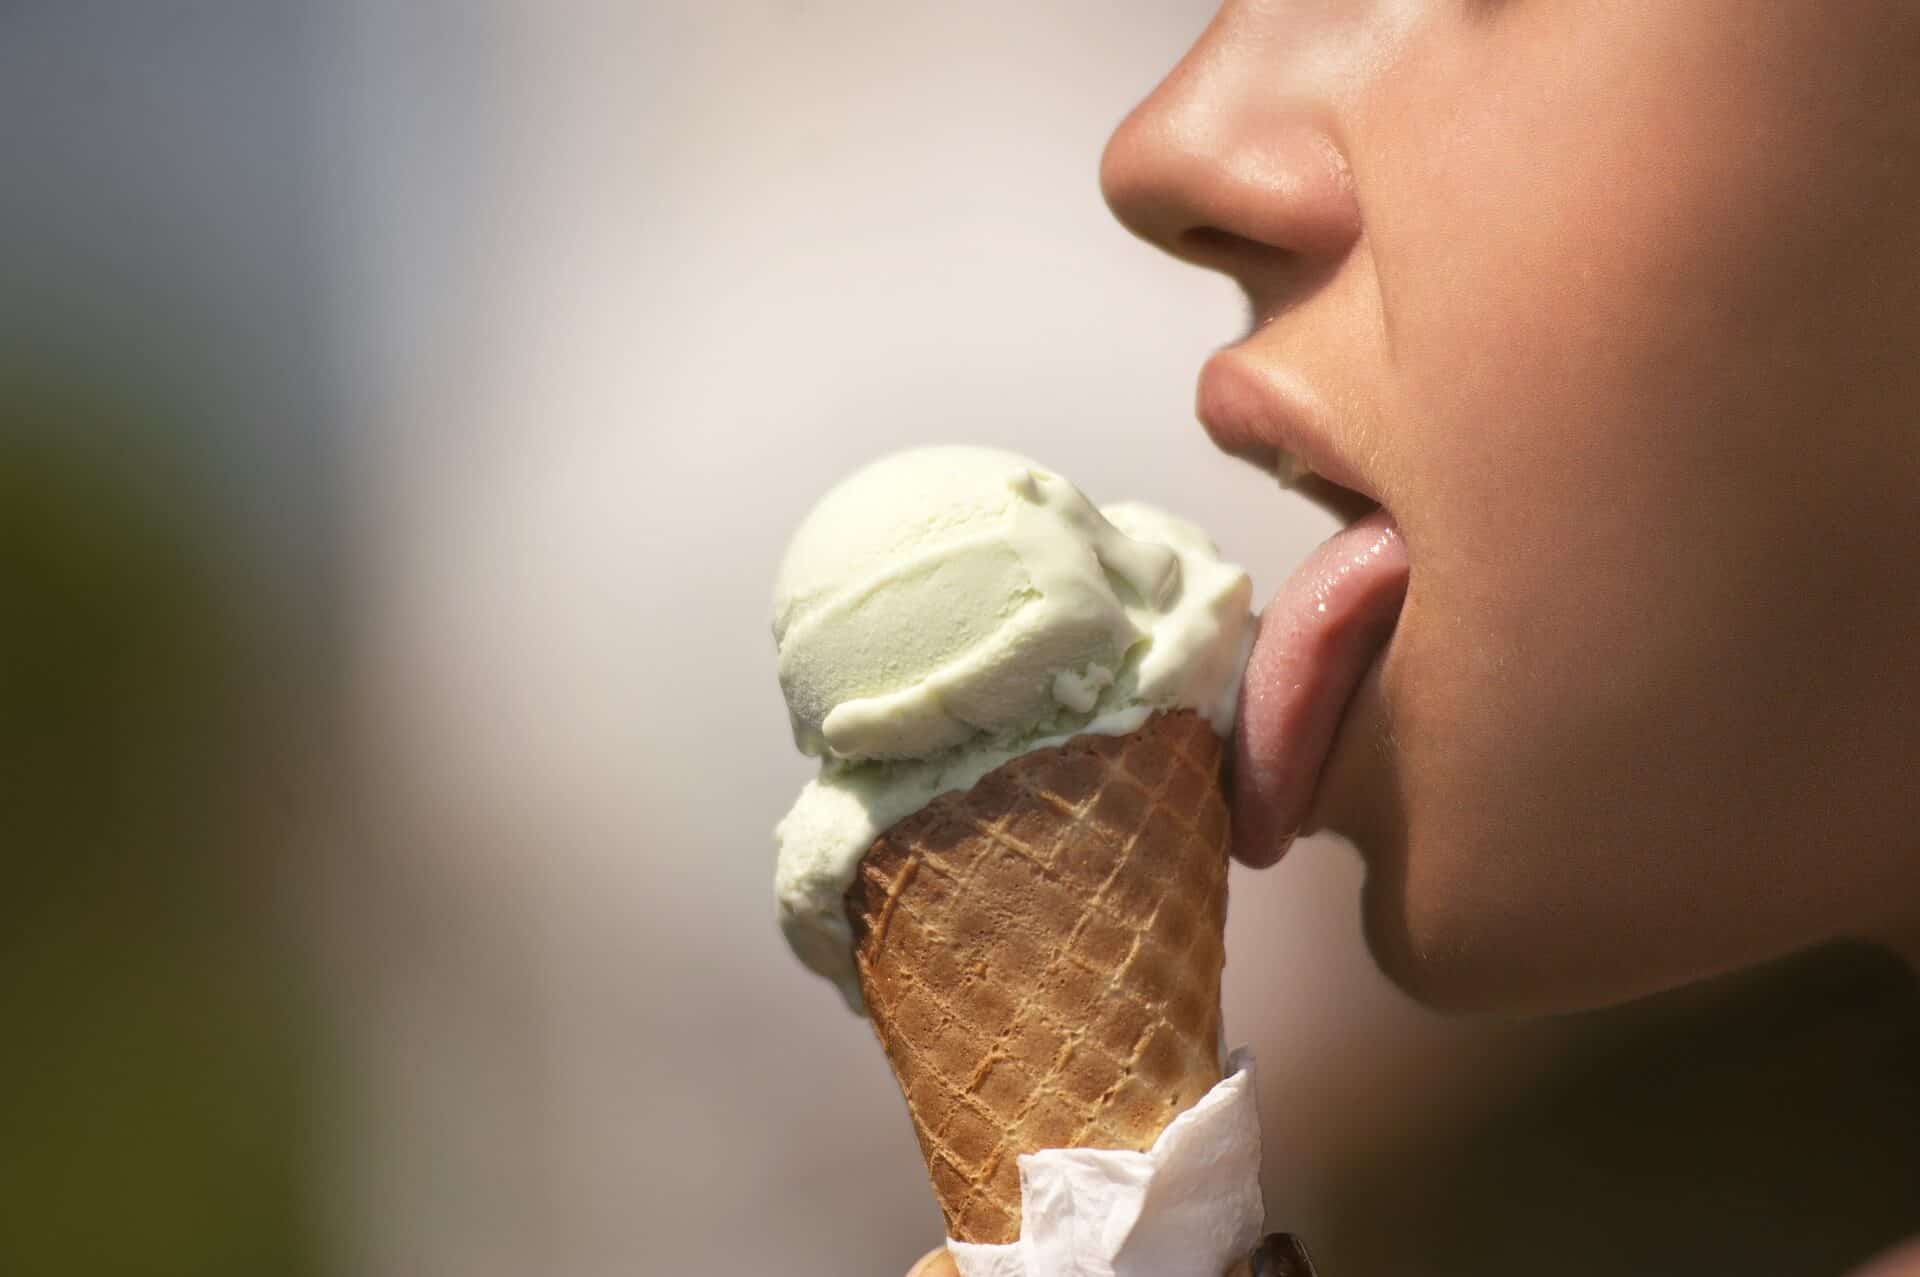 Najbizarnejšie zákony sveta - ice cream 2588541 1920 - Najbizarnejšie zákony sveta